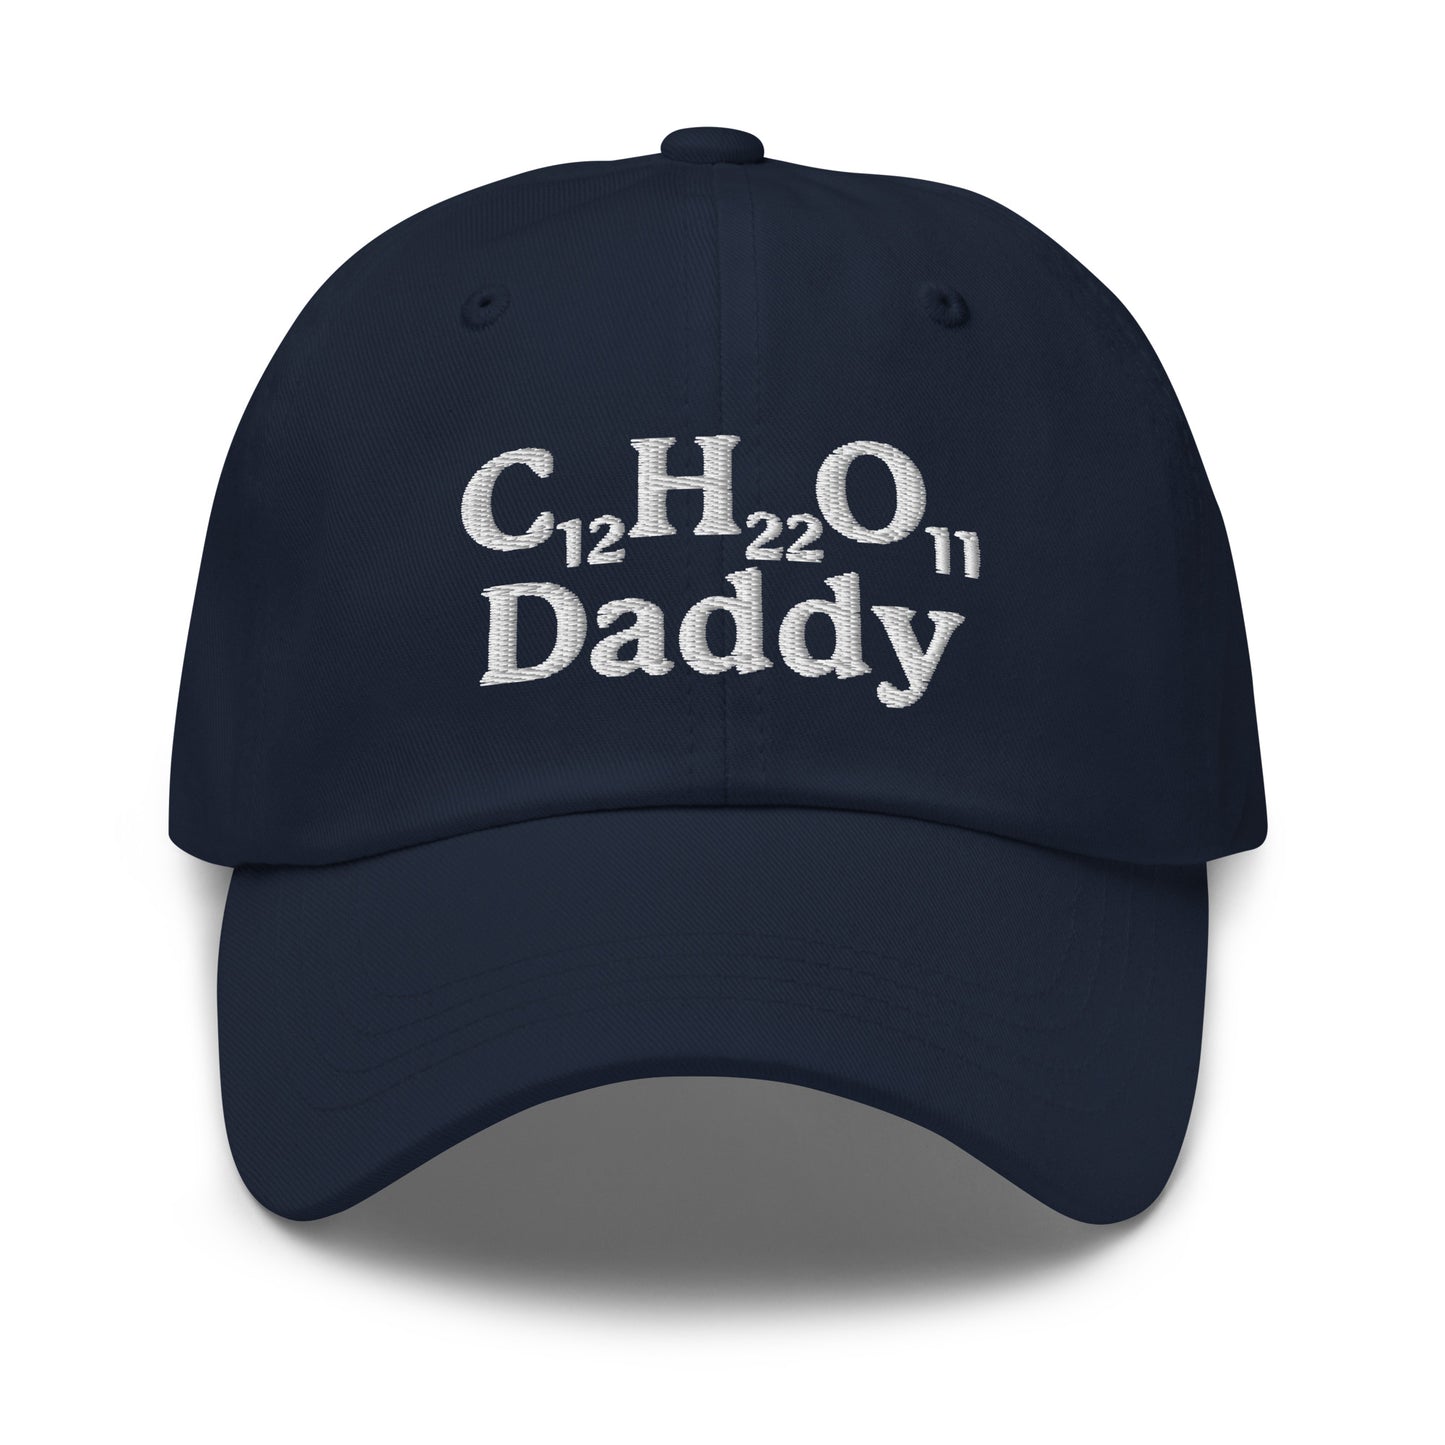 C12H22O11 Daddy (Sugar Daddy) hat